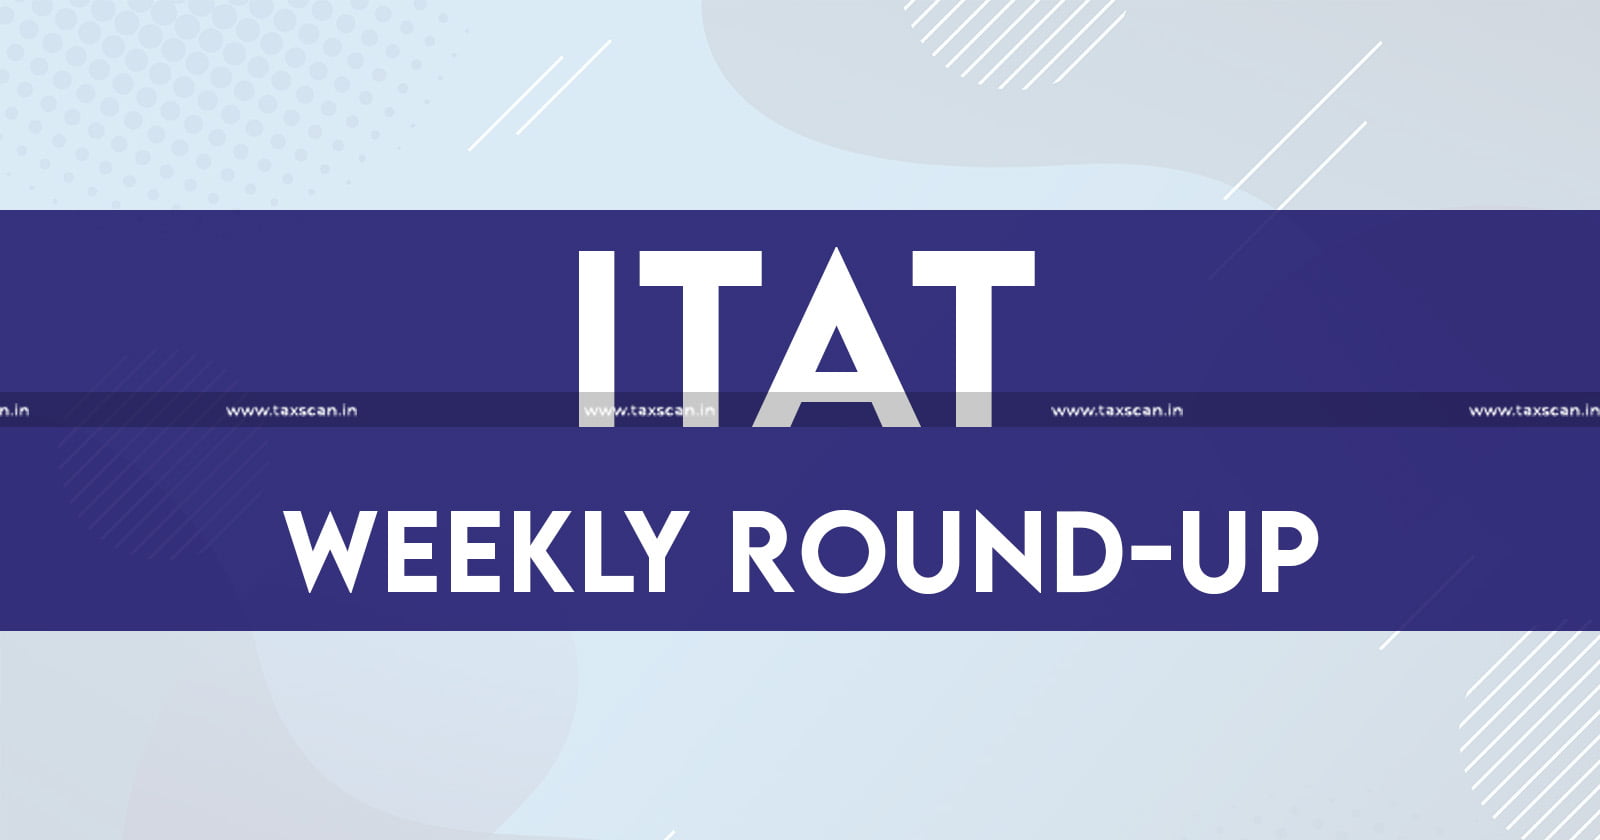 ITAT news - ITAT - Tax tribunal updates - Income tax - ITAT judgments - ITAT Weekly round up - taxscan